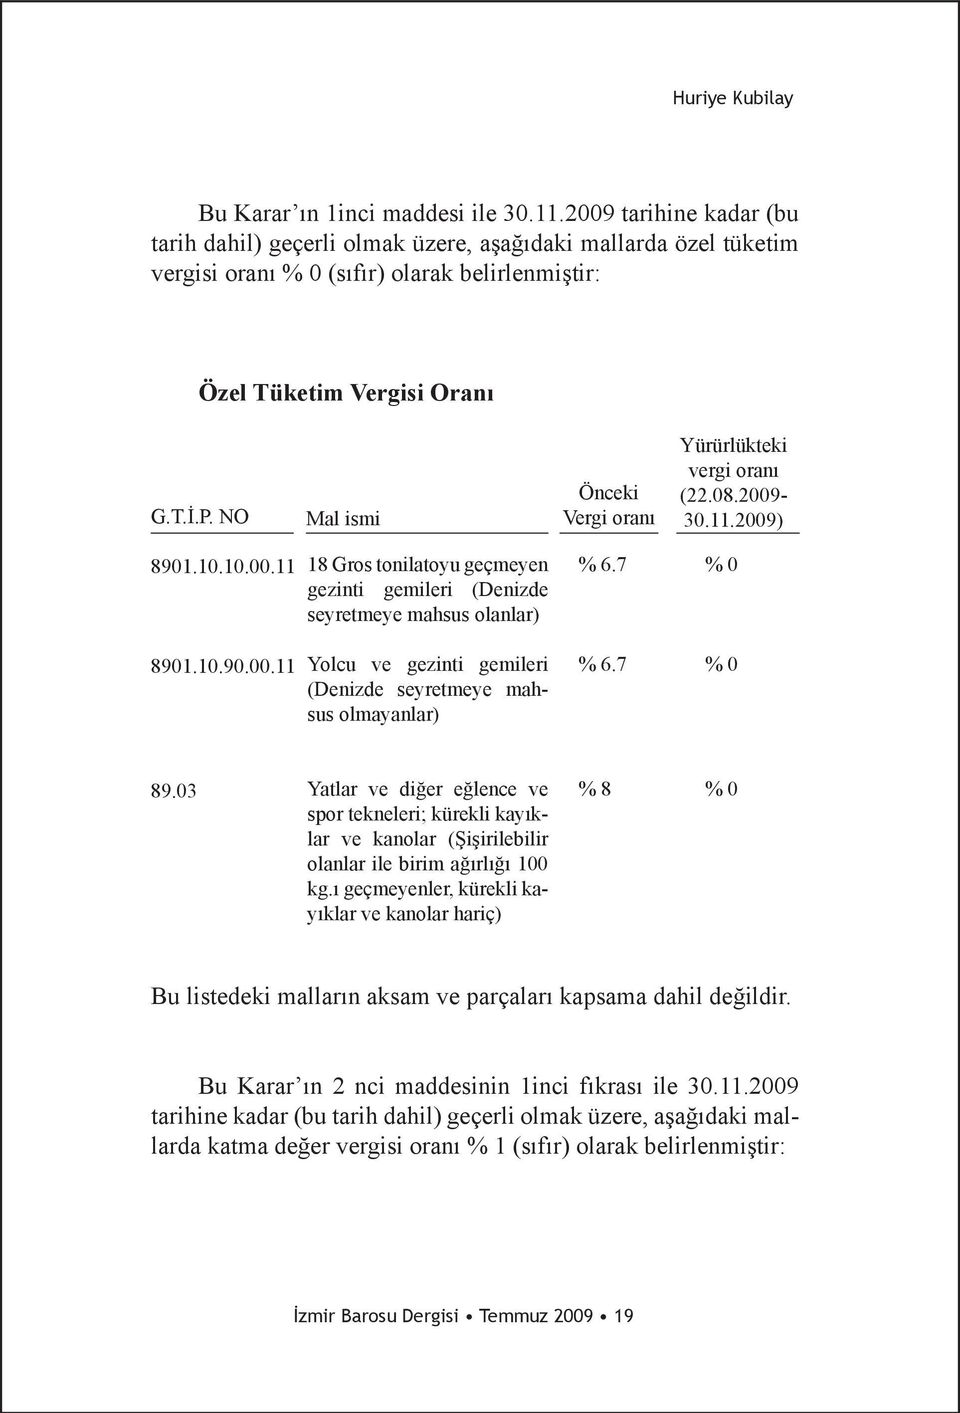 NO Mal ismi Önceki Vergi oranı Yürürlükteki vergi oranı (22.08.2009